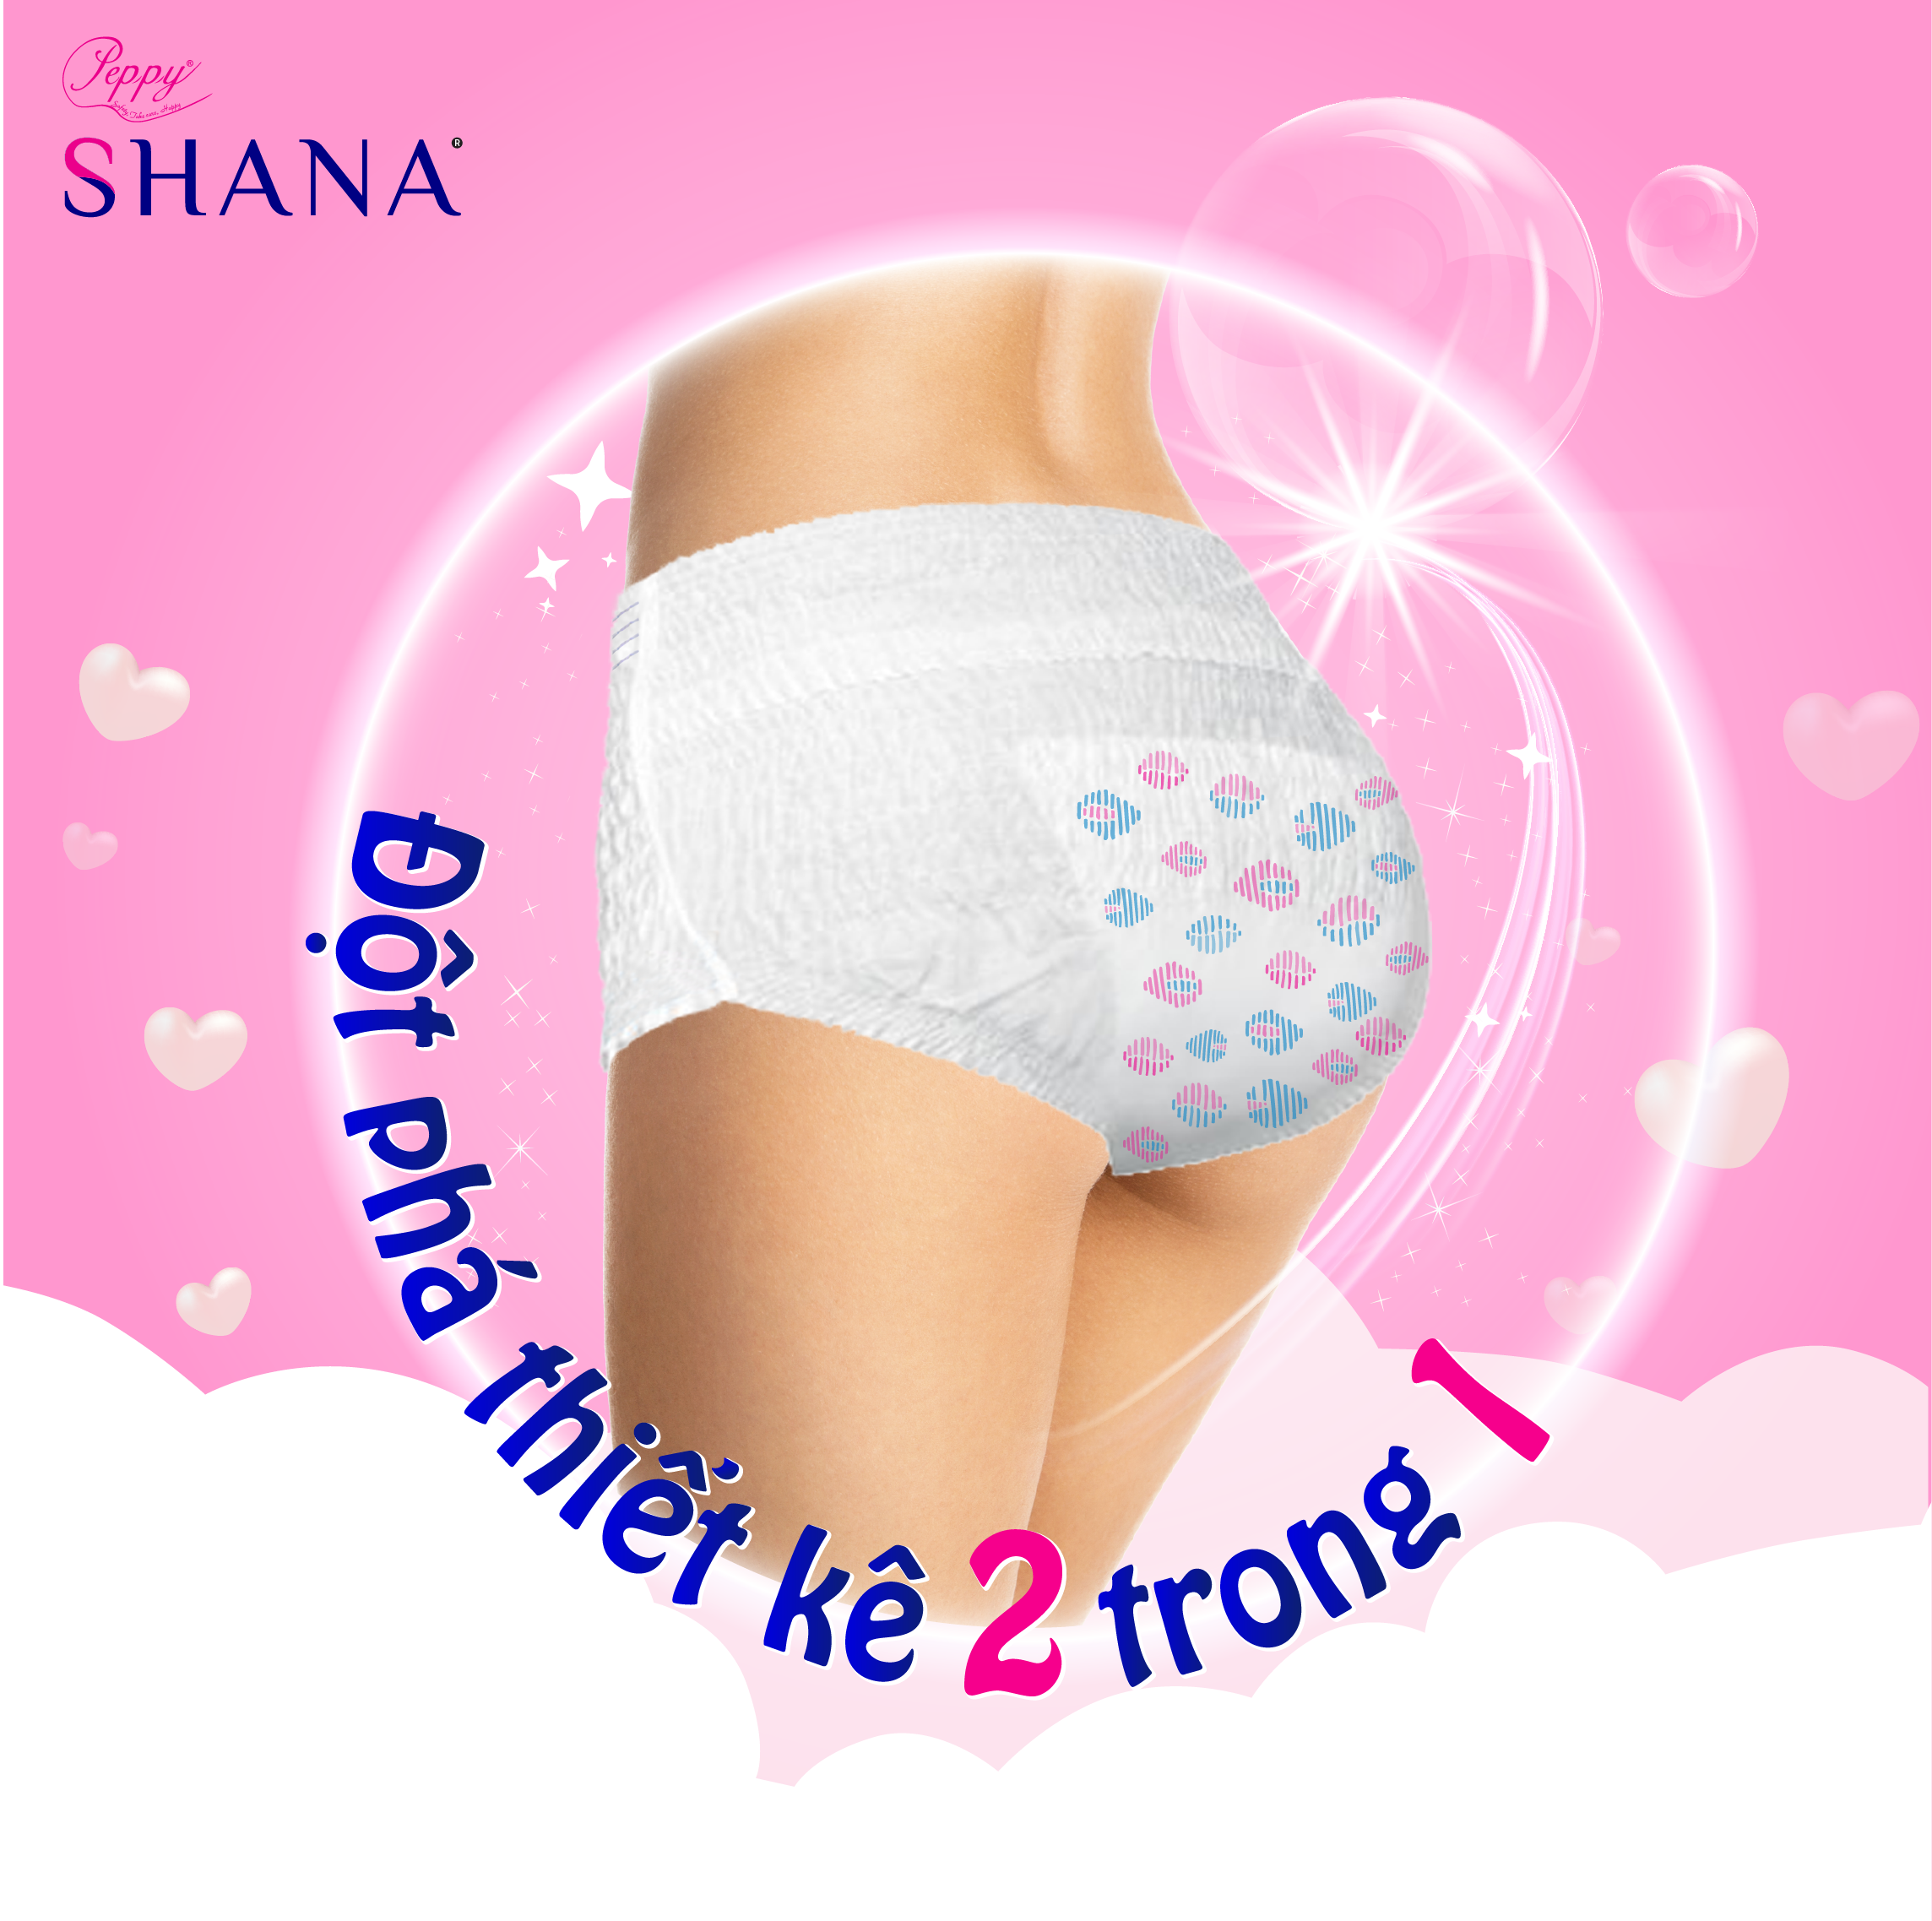 [ MUA 1 TẶNG 1 ] Mua 1 gói Băng vệ sinh quần cao cấp Shana siêu mềm, dùng ban đêm tặng 1 gói cùng loại